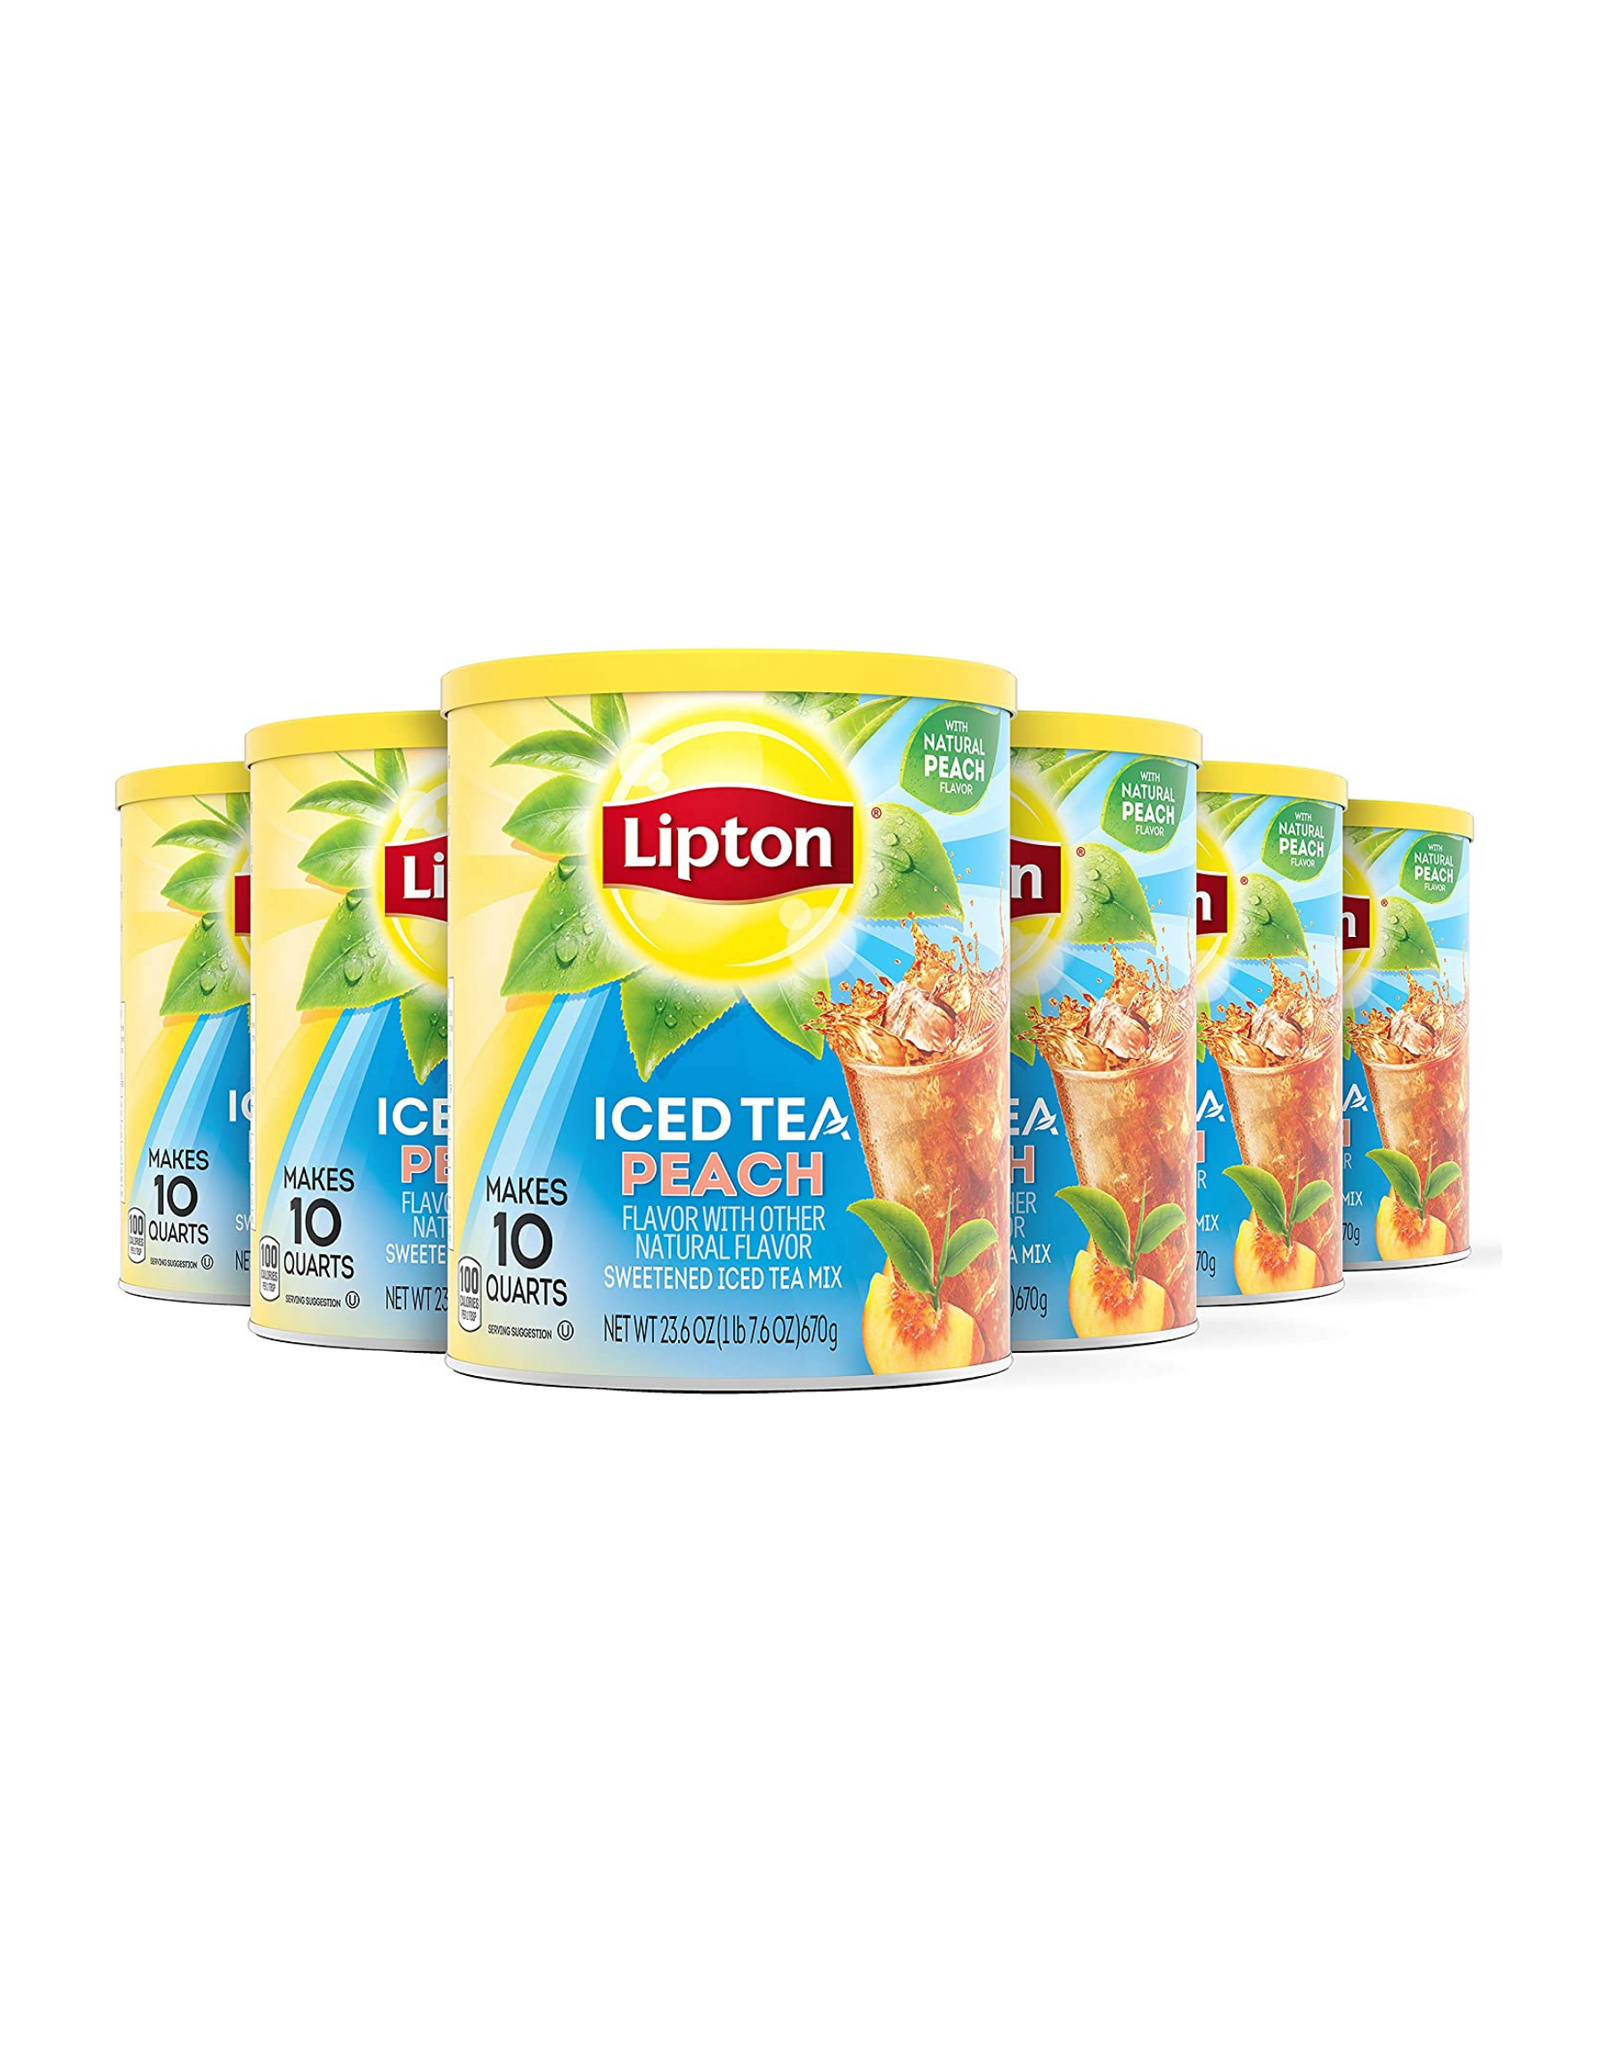 Lipton Diet Iced Tea Mix, Iced Tea Peach Flavor, Makes 10 Quarts (Pack of 6)